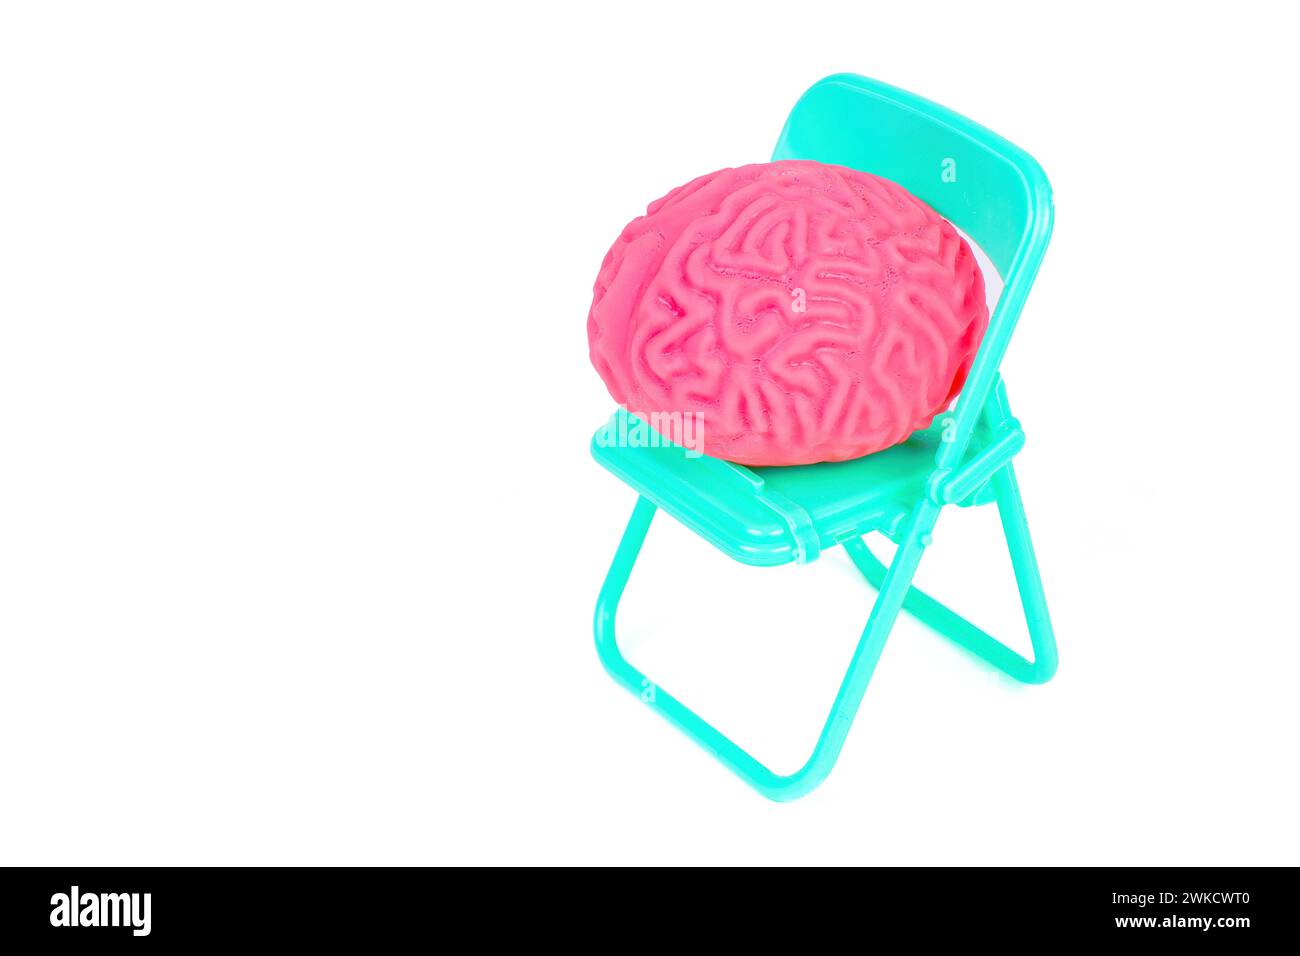 Zartrosa menschliches Gehirn auf einem Klappstuhl, isoliert auf weiß. Kreatives Konzept der Patientenantizipation. Stockfoto